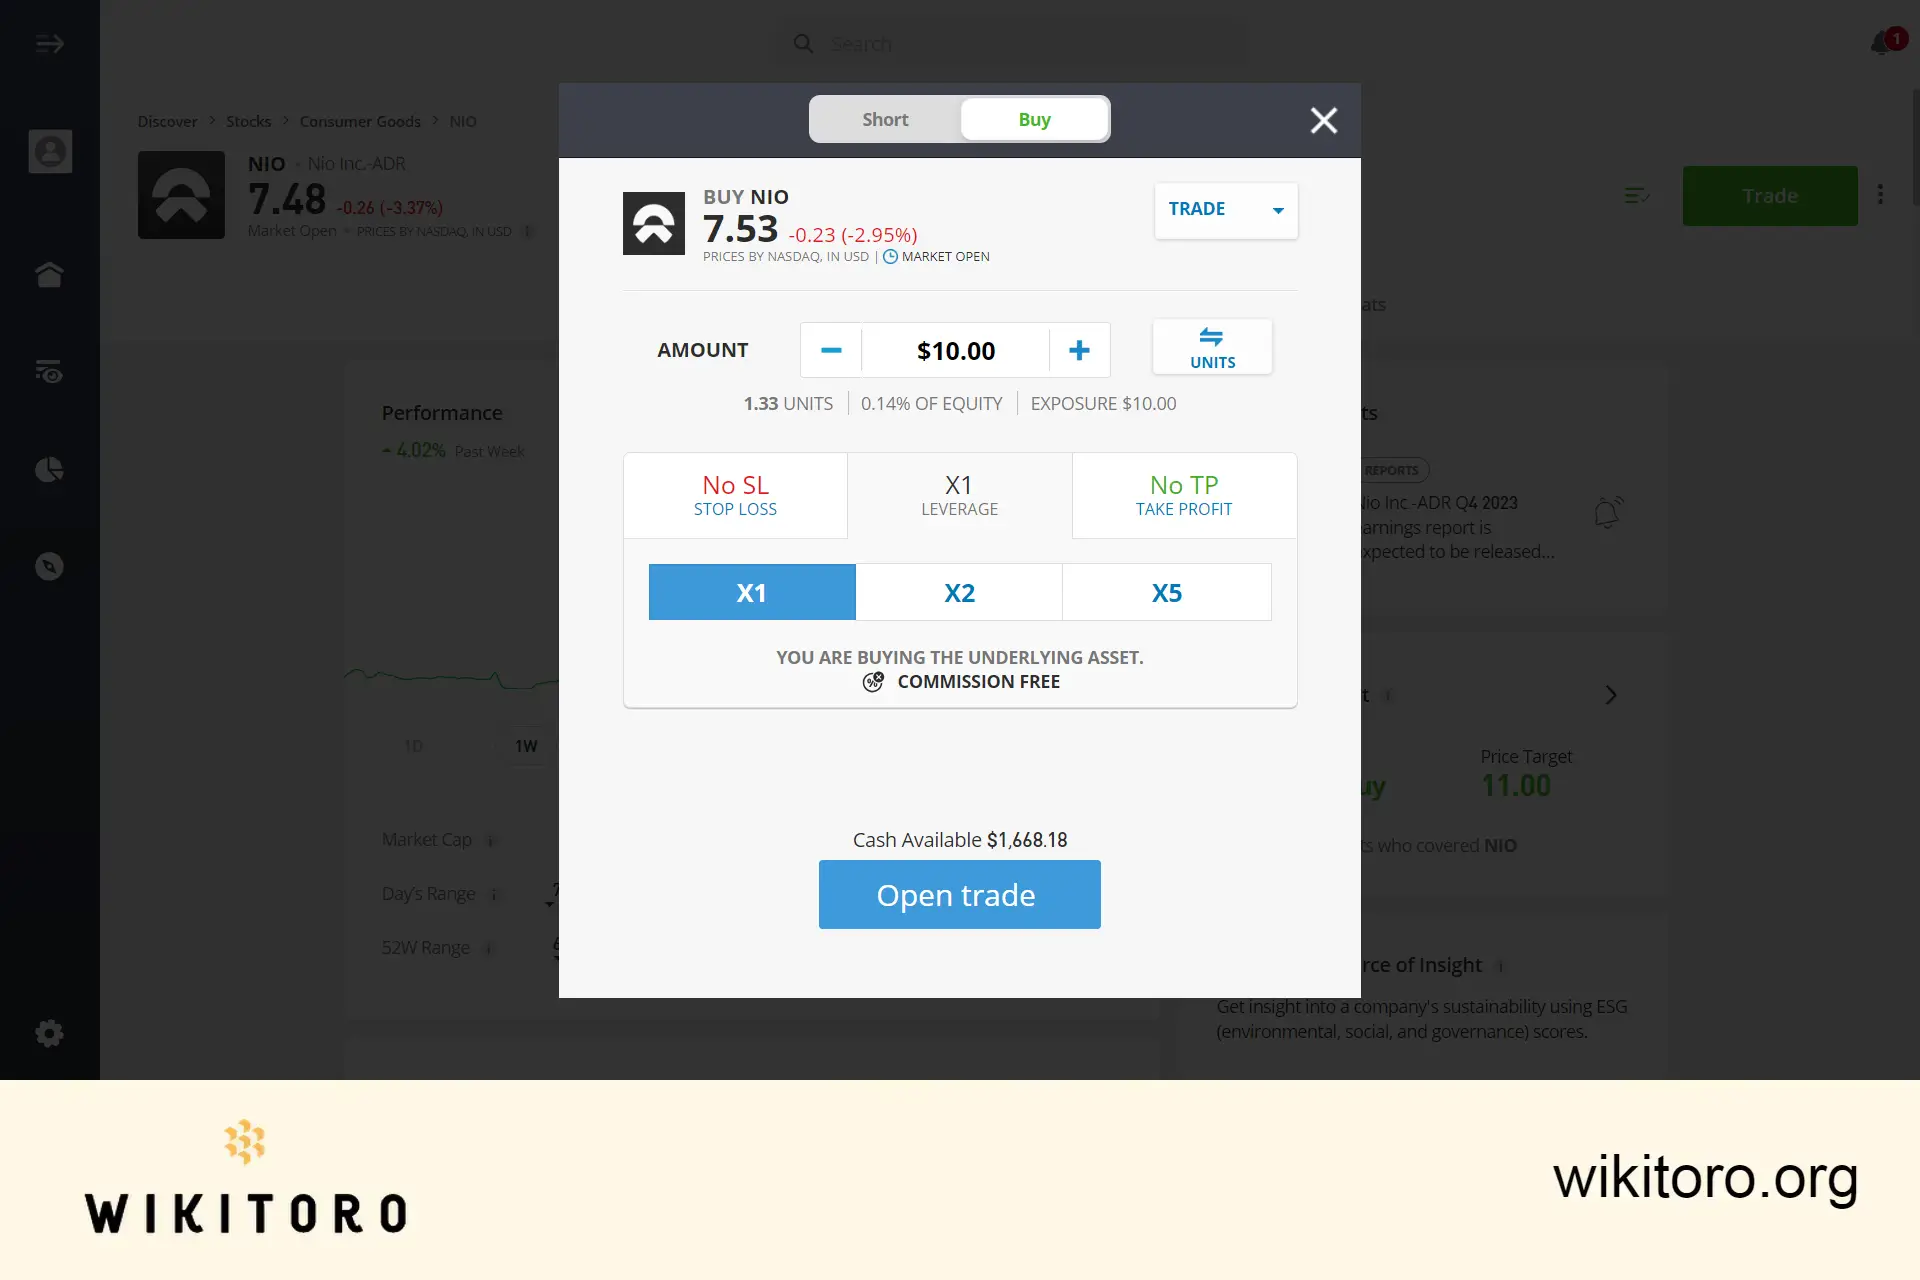 Buying NIO stock on eToro